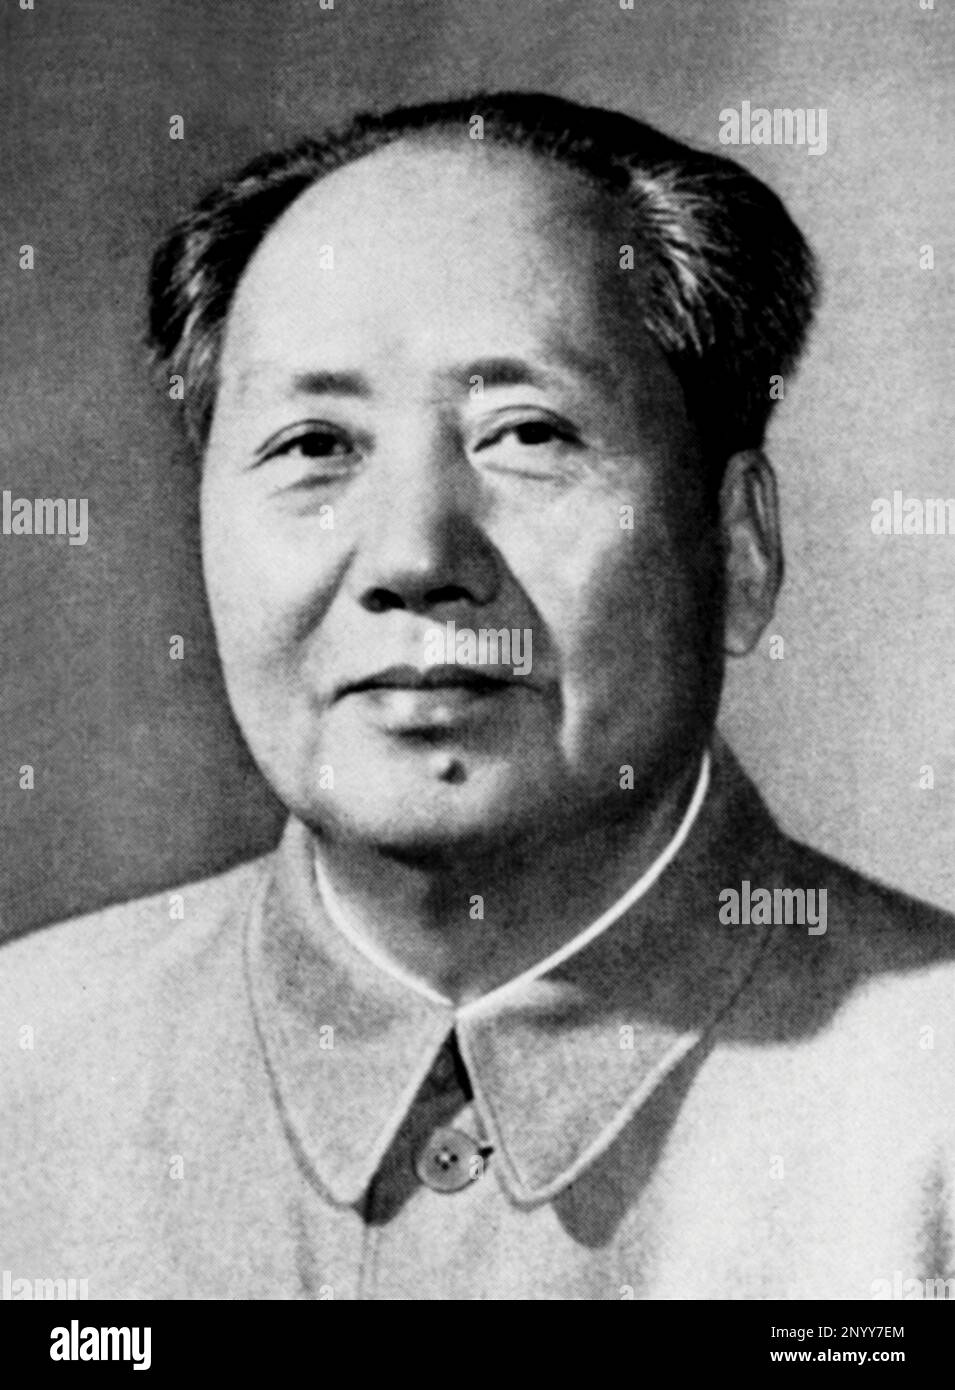 Un popolare ritratto ufficiale del politico cinese MAO TSE-TUNG ( Shao-Shan 1893 - Pecking 1976 ) . Questa stessa foto è stata utilizzata da Andy Warhol per la sua celebrata serie di ritratti Mao serigrafi negli anni '70 - POLITICO - POLITICA - socialismo - socialismo - COMUNISMO - COMUNISTA - comunismo - comunista - CINA - CINA - TSE tung - TZE TUNG - TZE-TUNG - Pop Art -- -- Archivio GBB Foto Stock